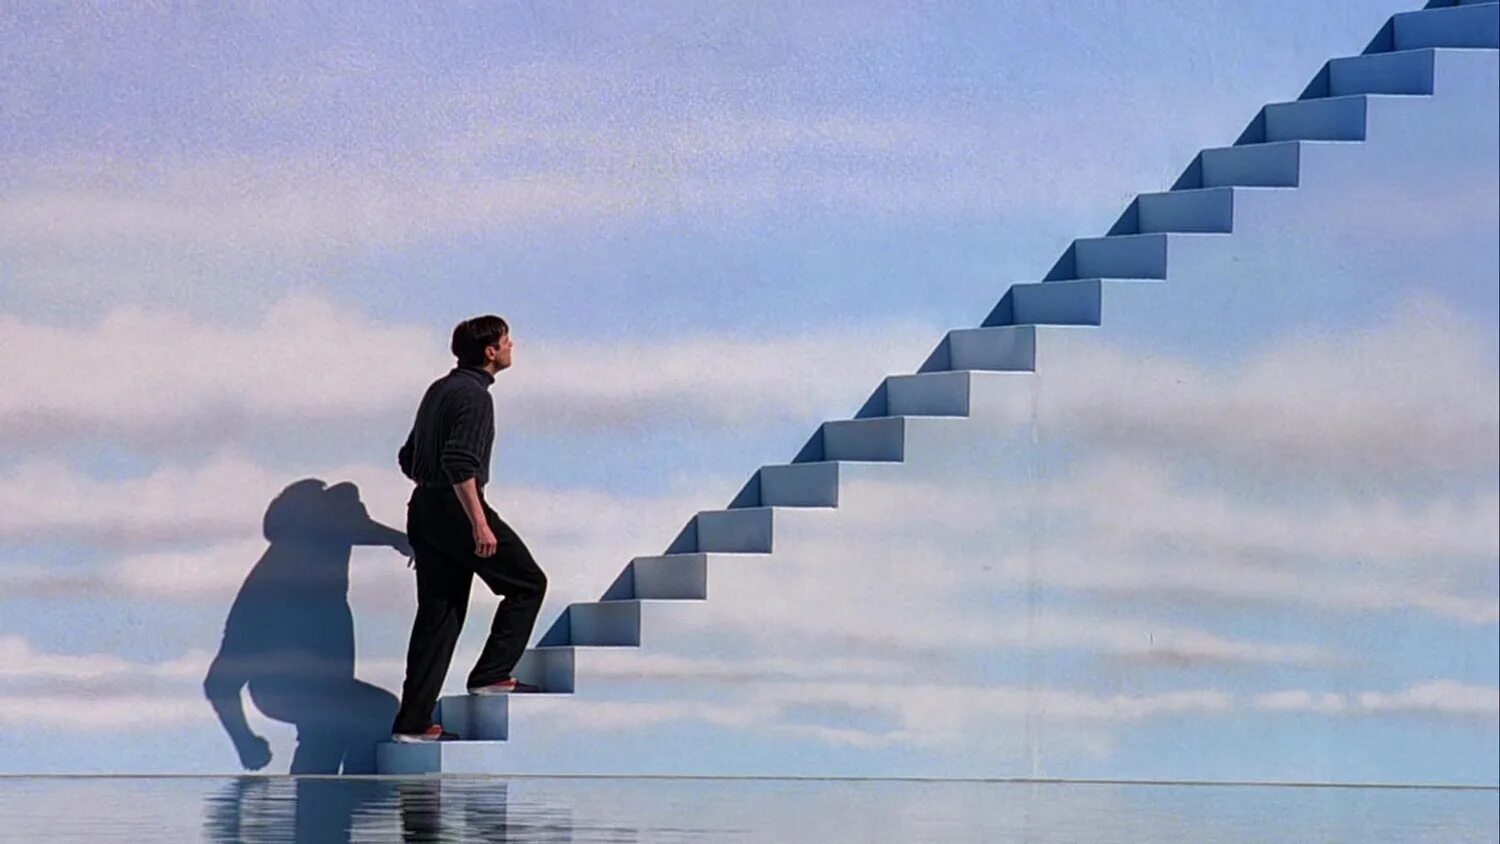 2 он поднимаясь по лестнице. Шоу Трумана лестница в небо. Джим Керри шоу Трумана лестница.